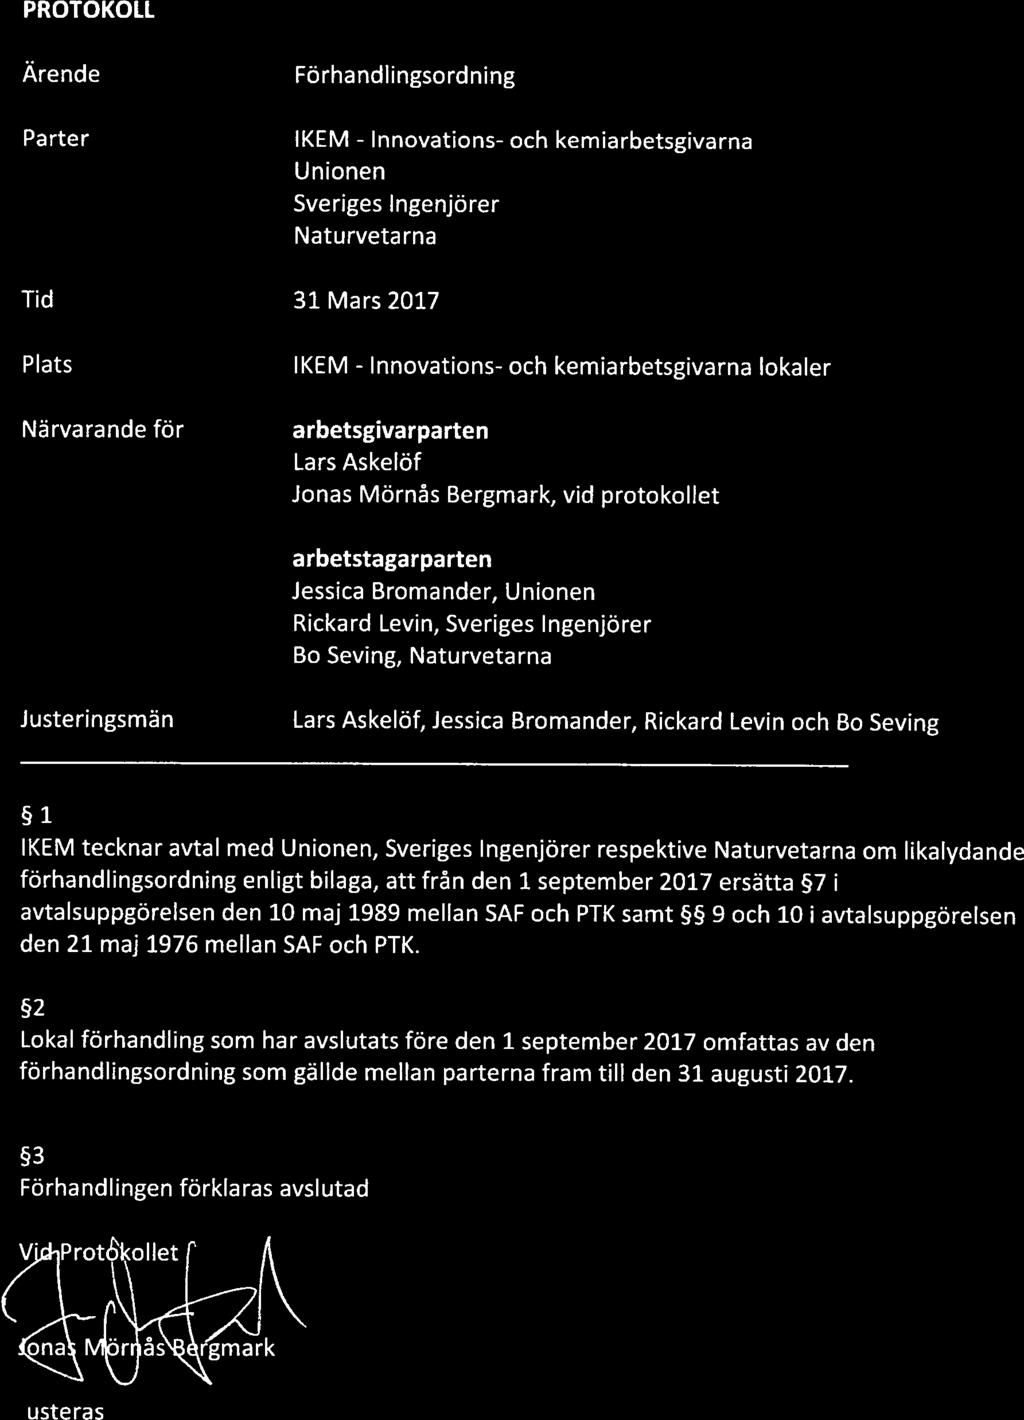 Innovations- Innovations- PROTOKOLL Ärende Parter Tid Plats Närvarande för Förhandlingsordning IKEM - och kemiarbetsgivarna Unionen Sveriges Ingenjörer Natu rveta rna 31 Mars 2017 IKEM - och